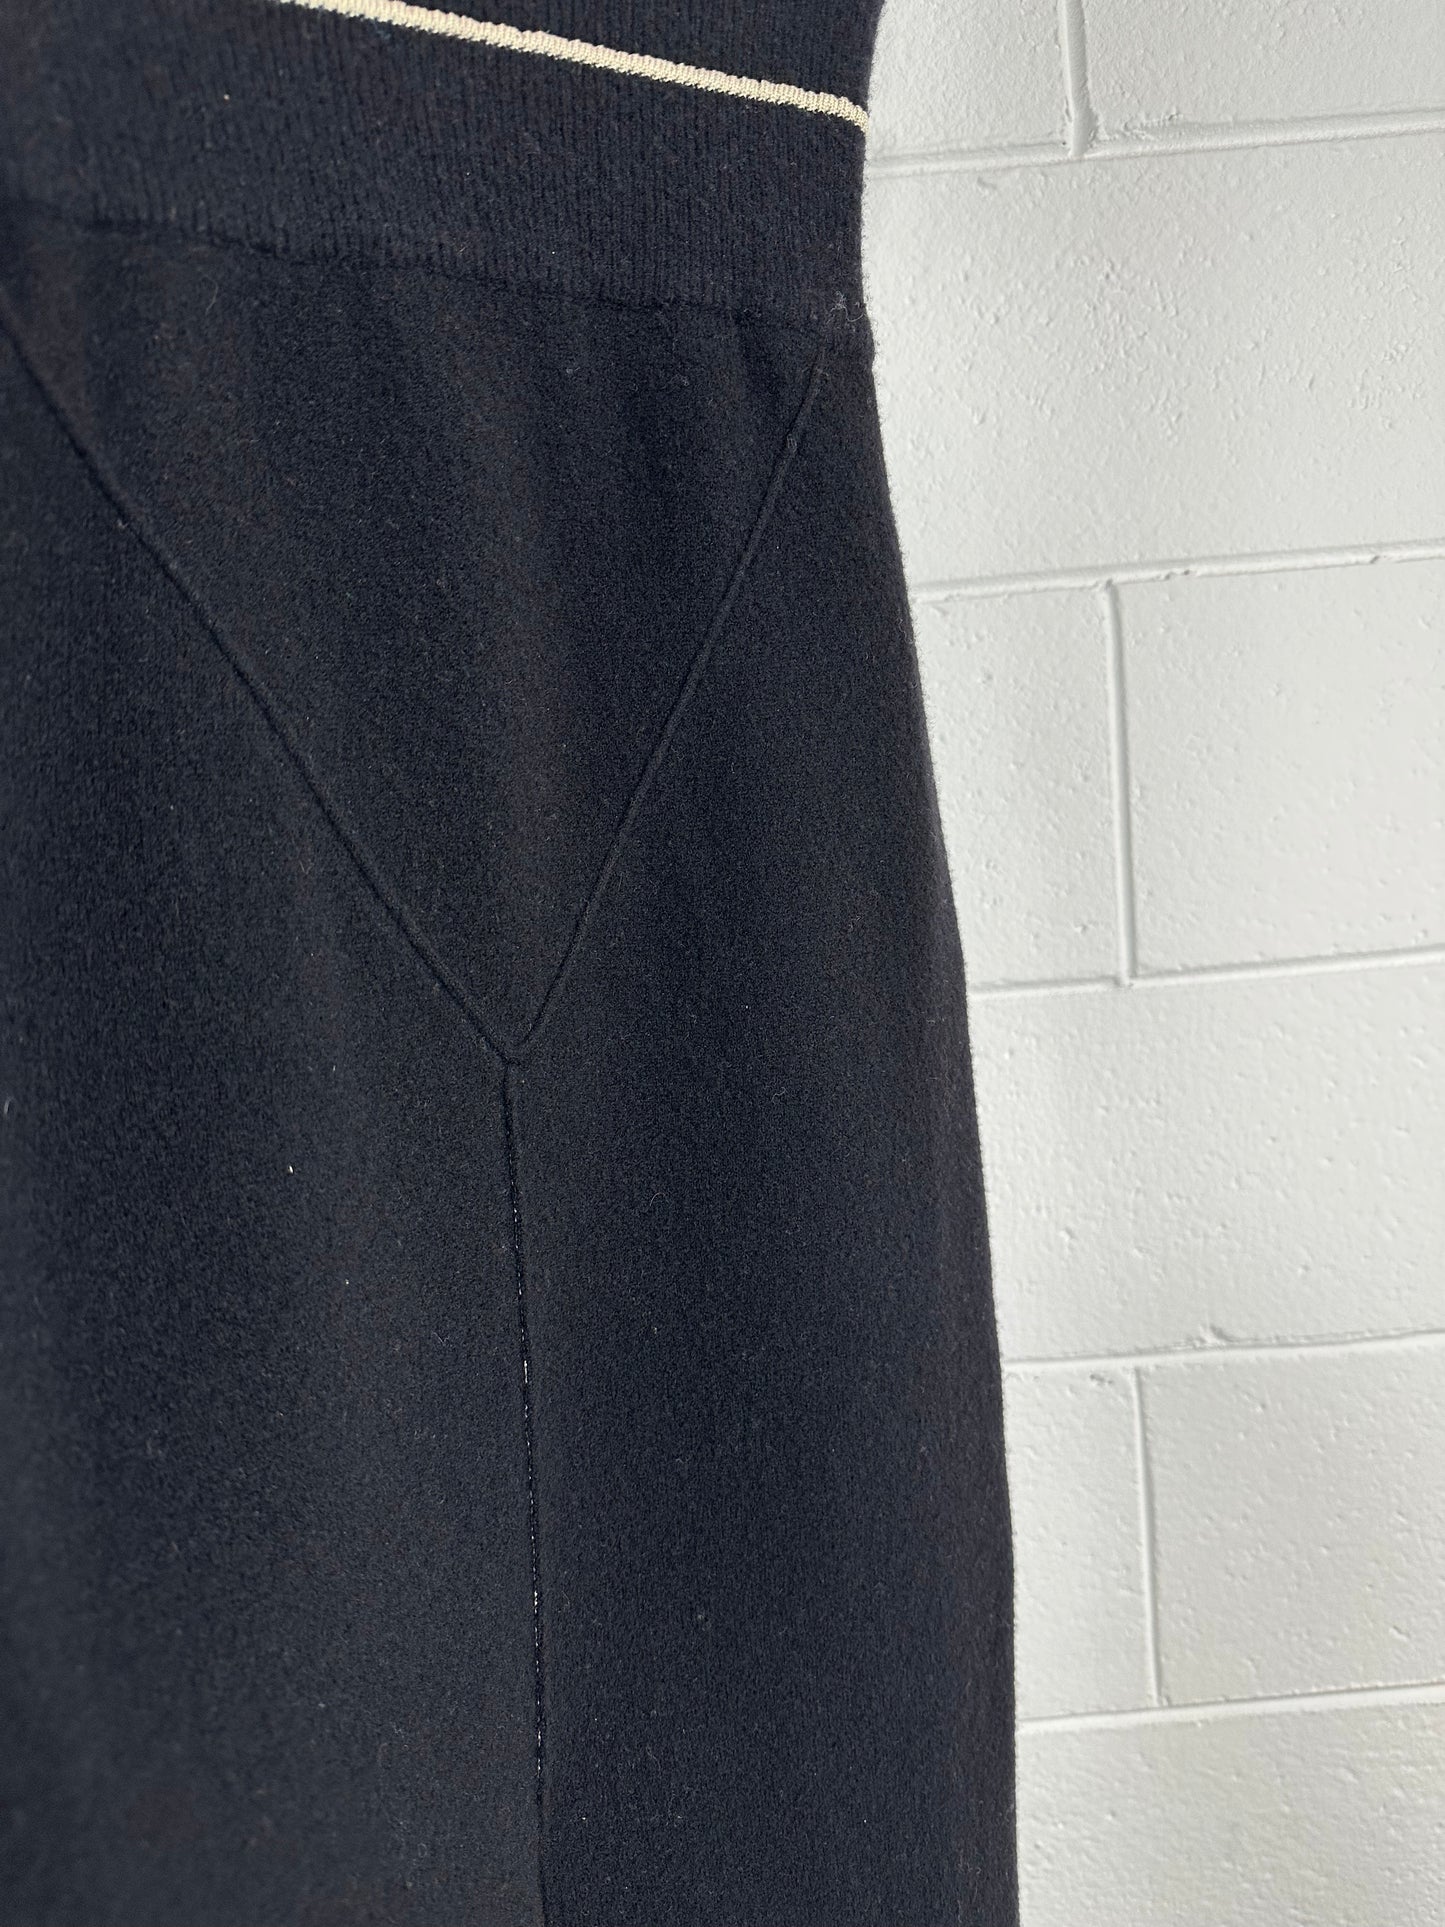 Tricot Longuette Skirt